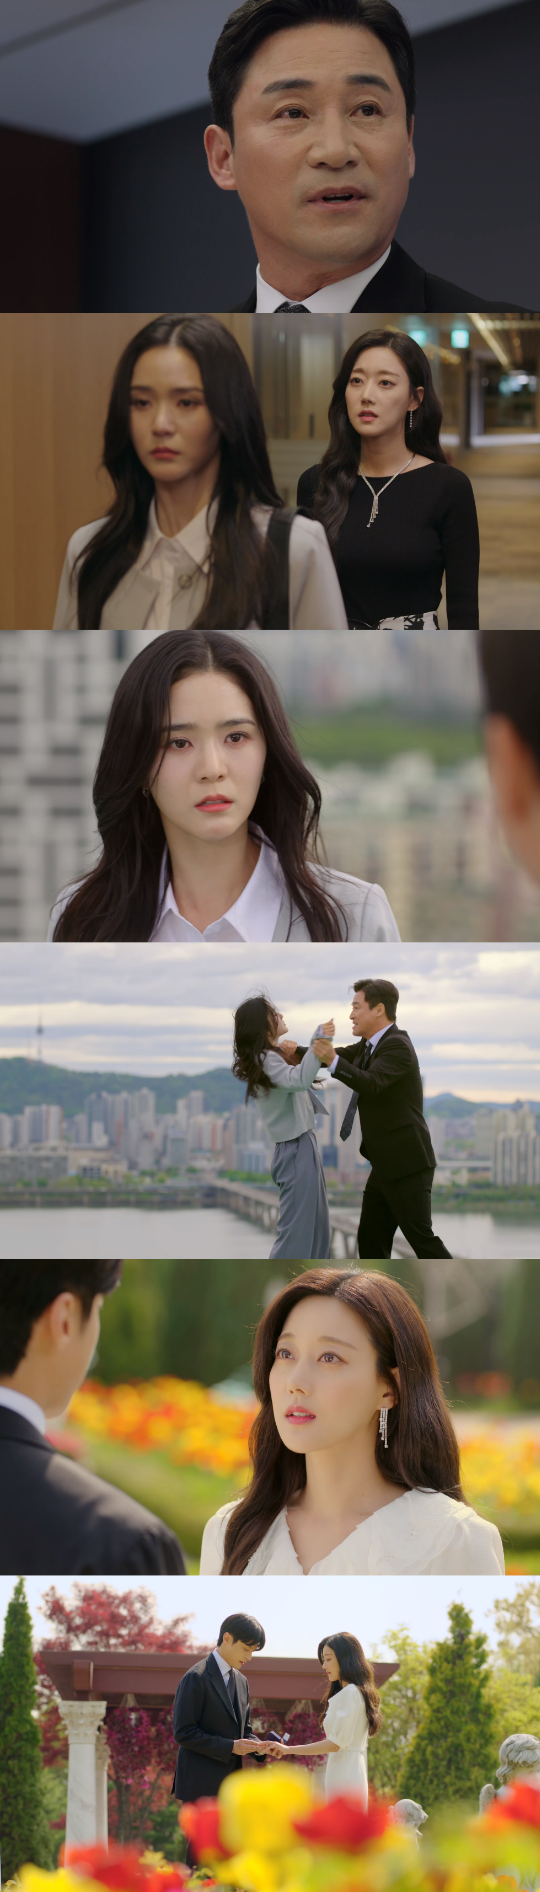 ‘세 번째 결혼’ 윤선우, 오승아가 결혼식을 올리고 해피엔딩으로 종영됐다.사진=MBC ‘세 번째 결혼’ 방송캡처